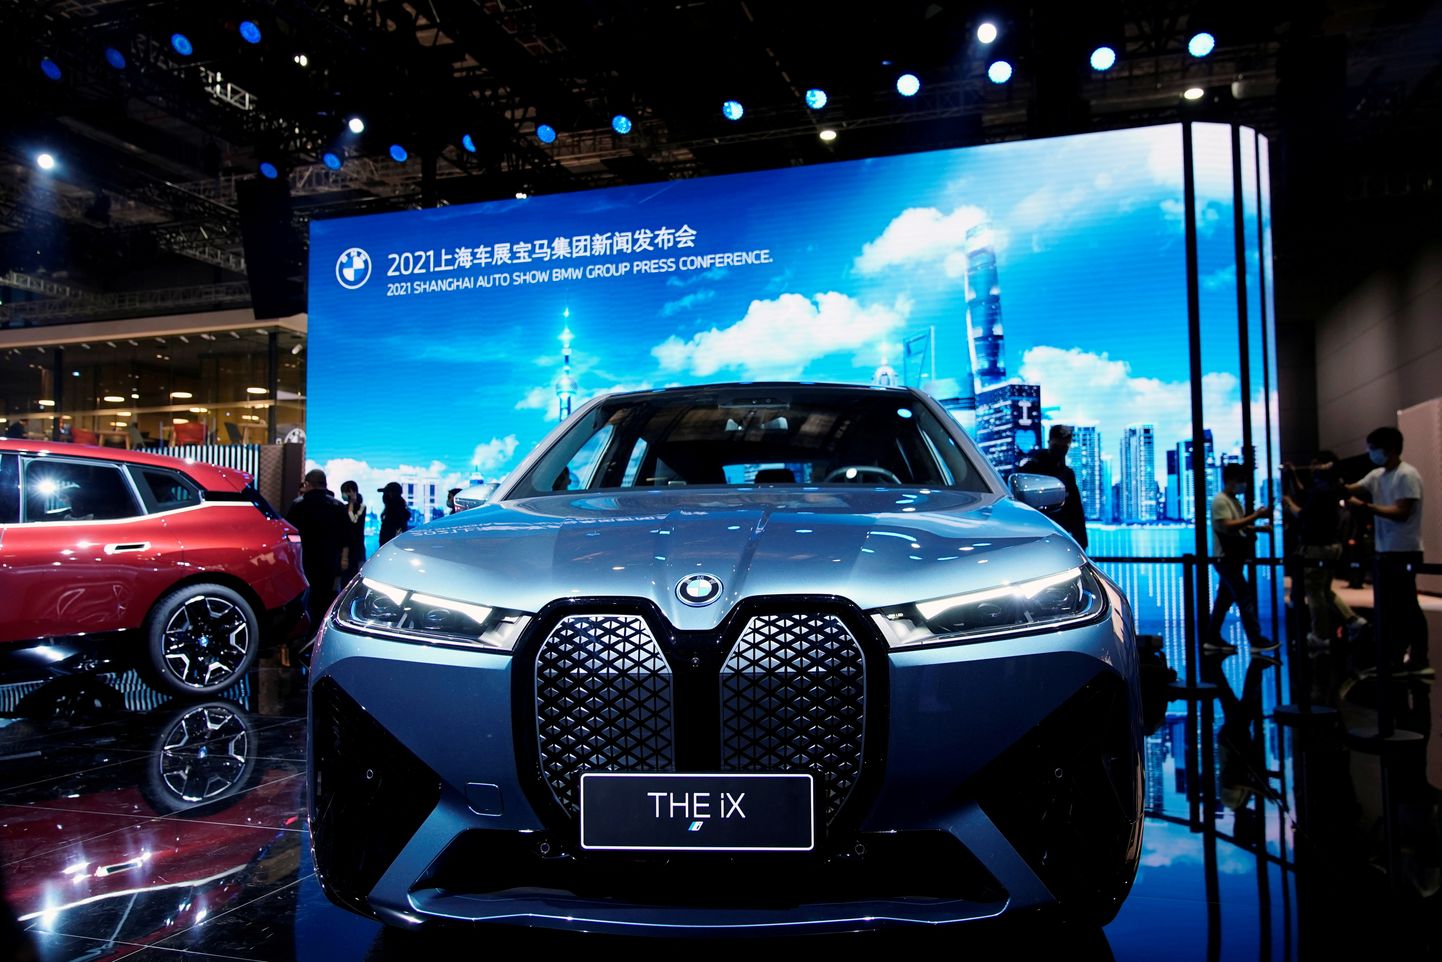 Elektriline BMW iX 19. aprillil 2021 Shanghai automessi meediaüritusel.